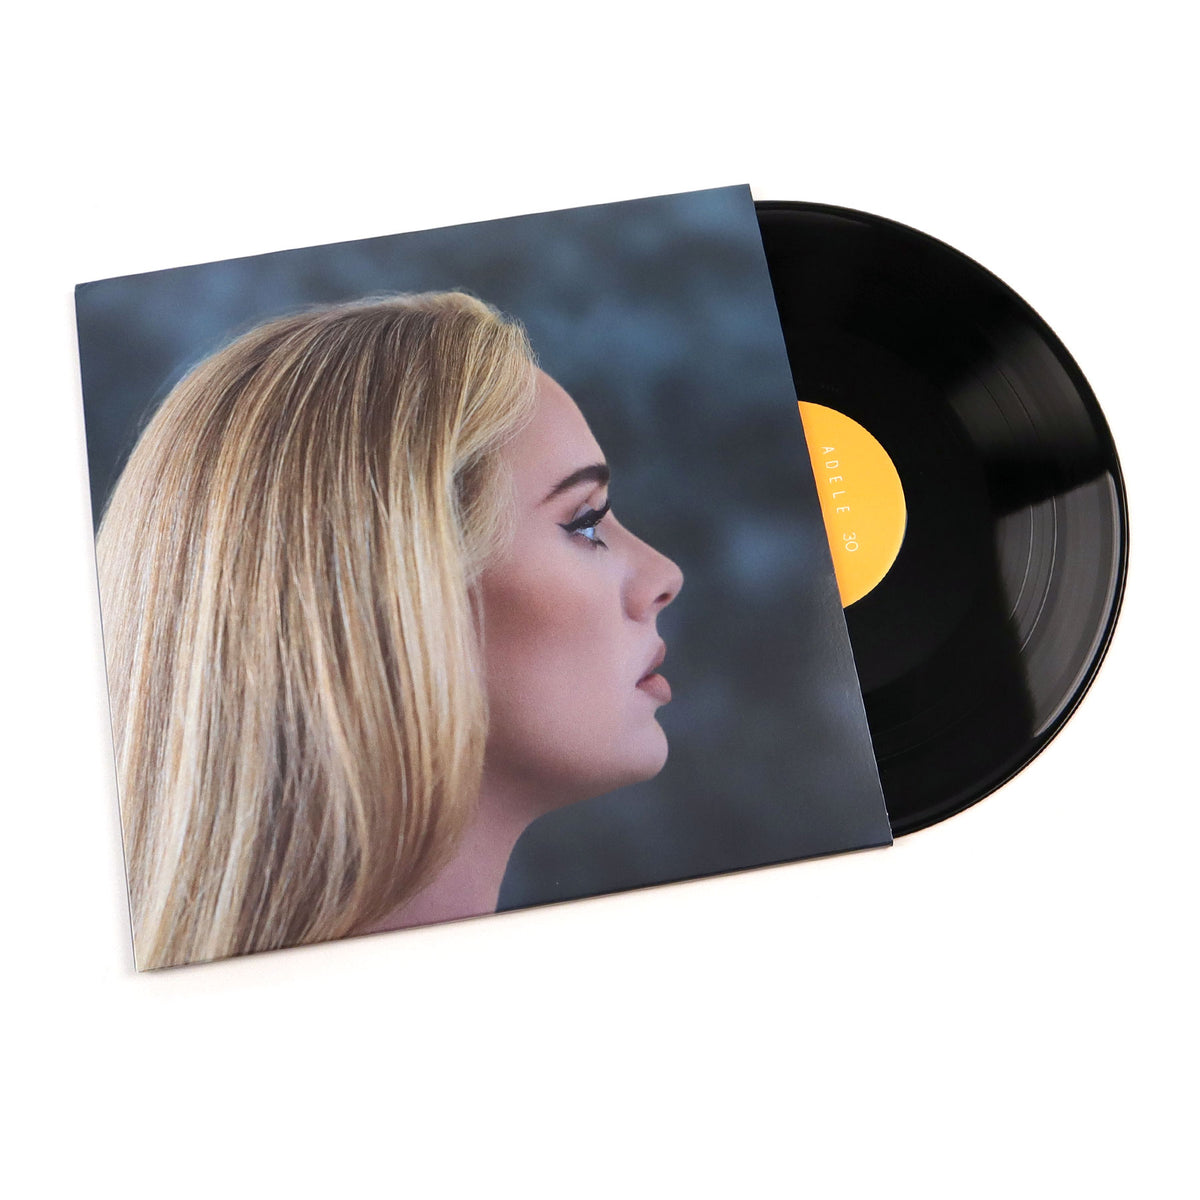 Adele music album on vinyl record LP disc. This album is called 25